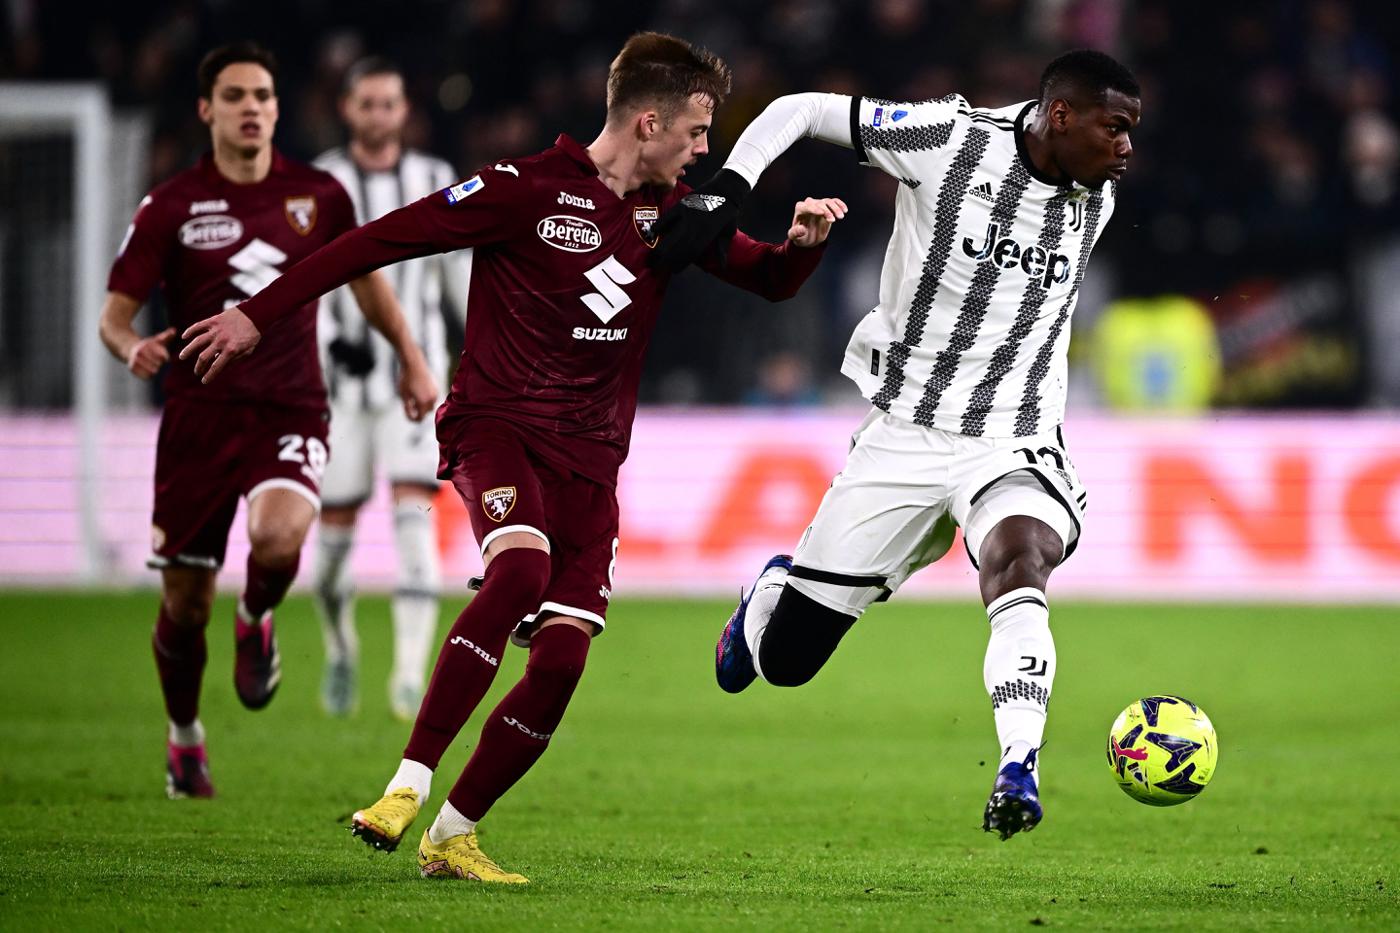 Juventus - Turin - 4-2. Italienische Meisterschaft, Runde 24. Spielbericht, Statistik.